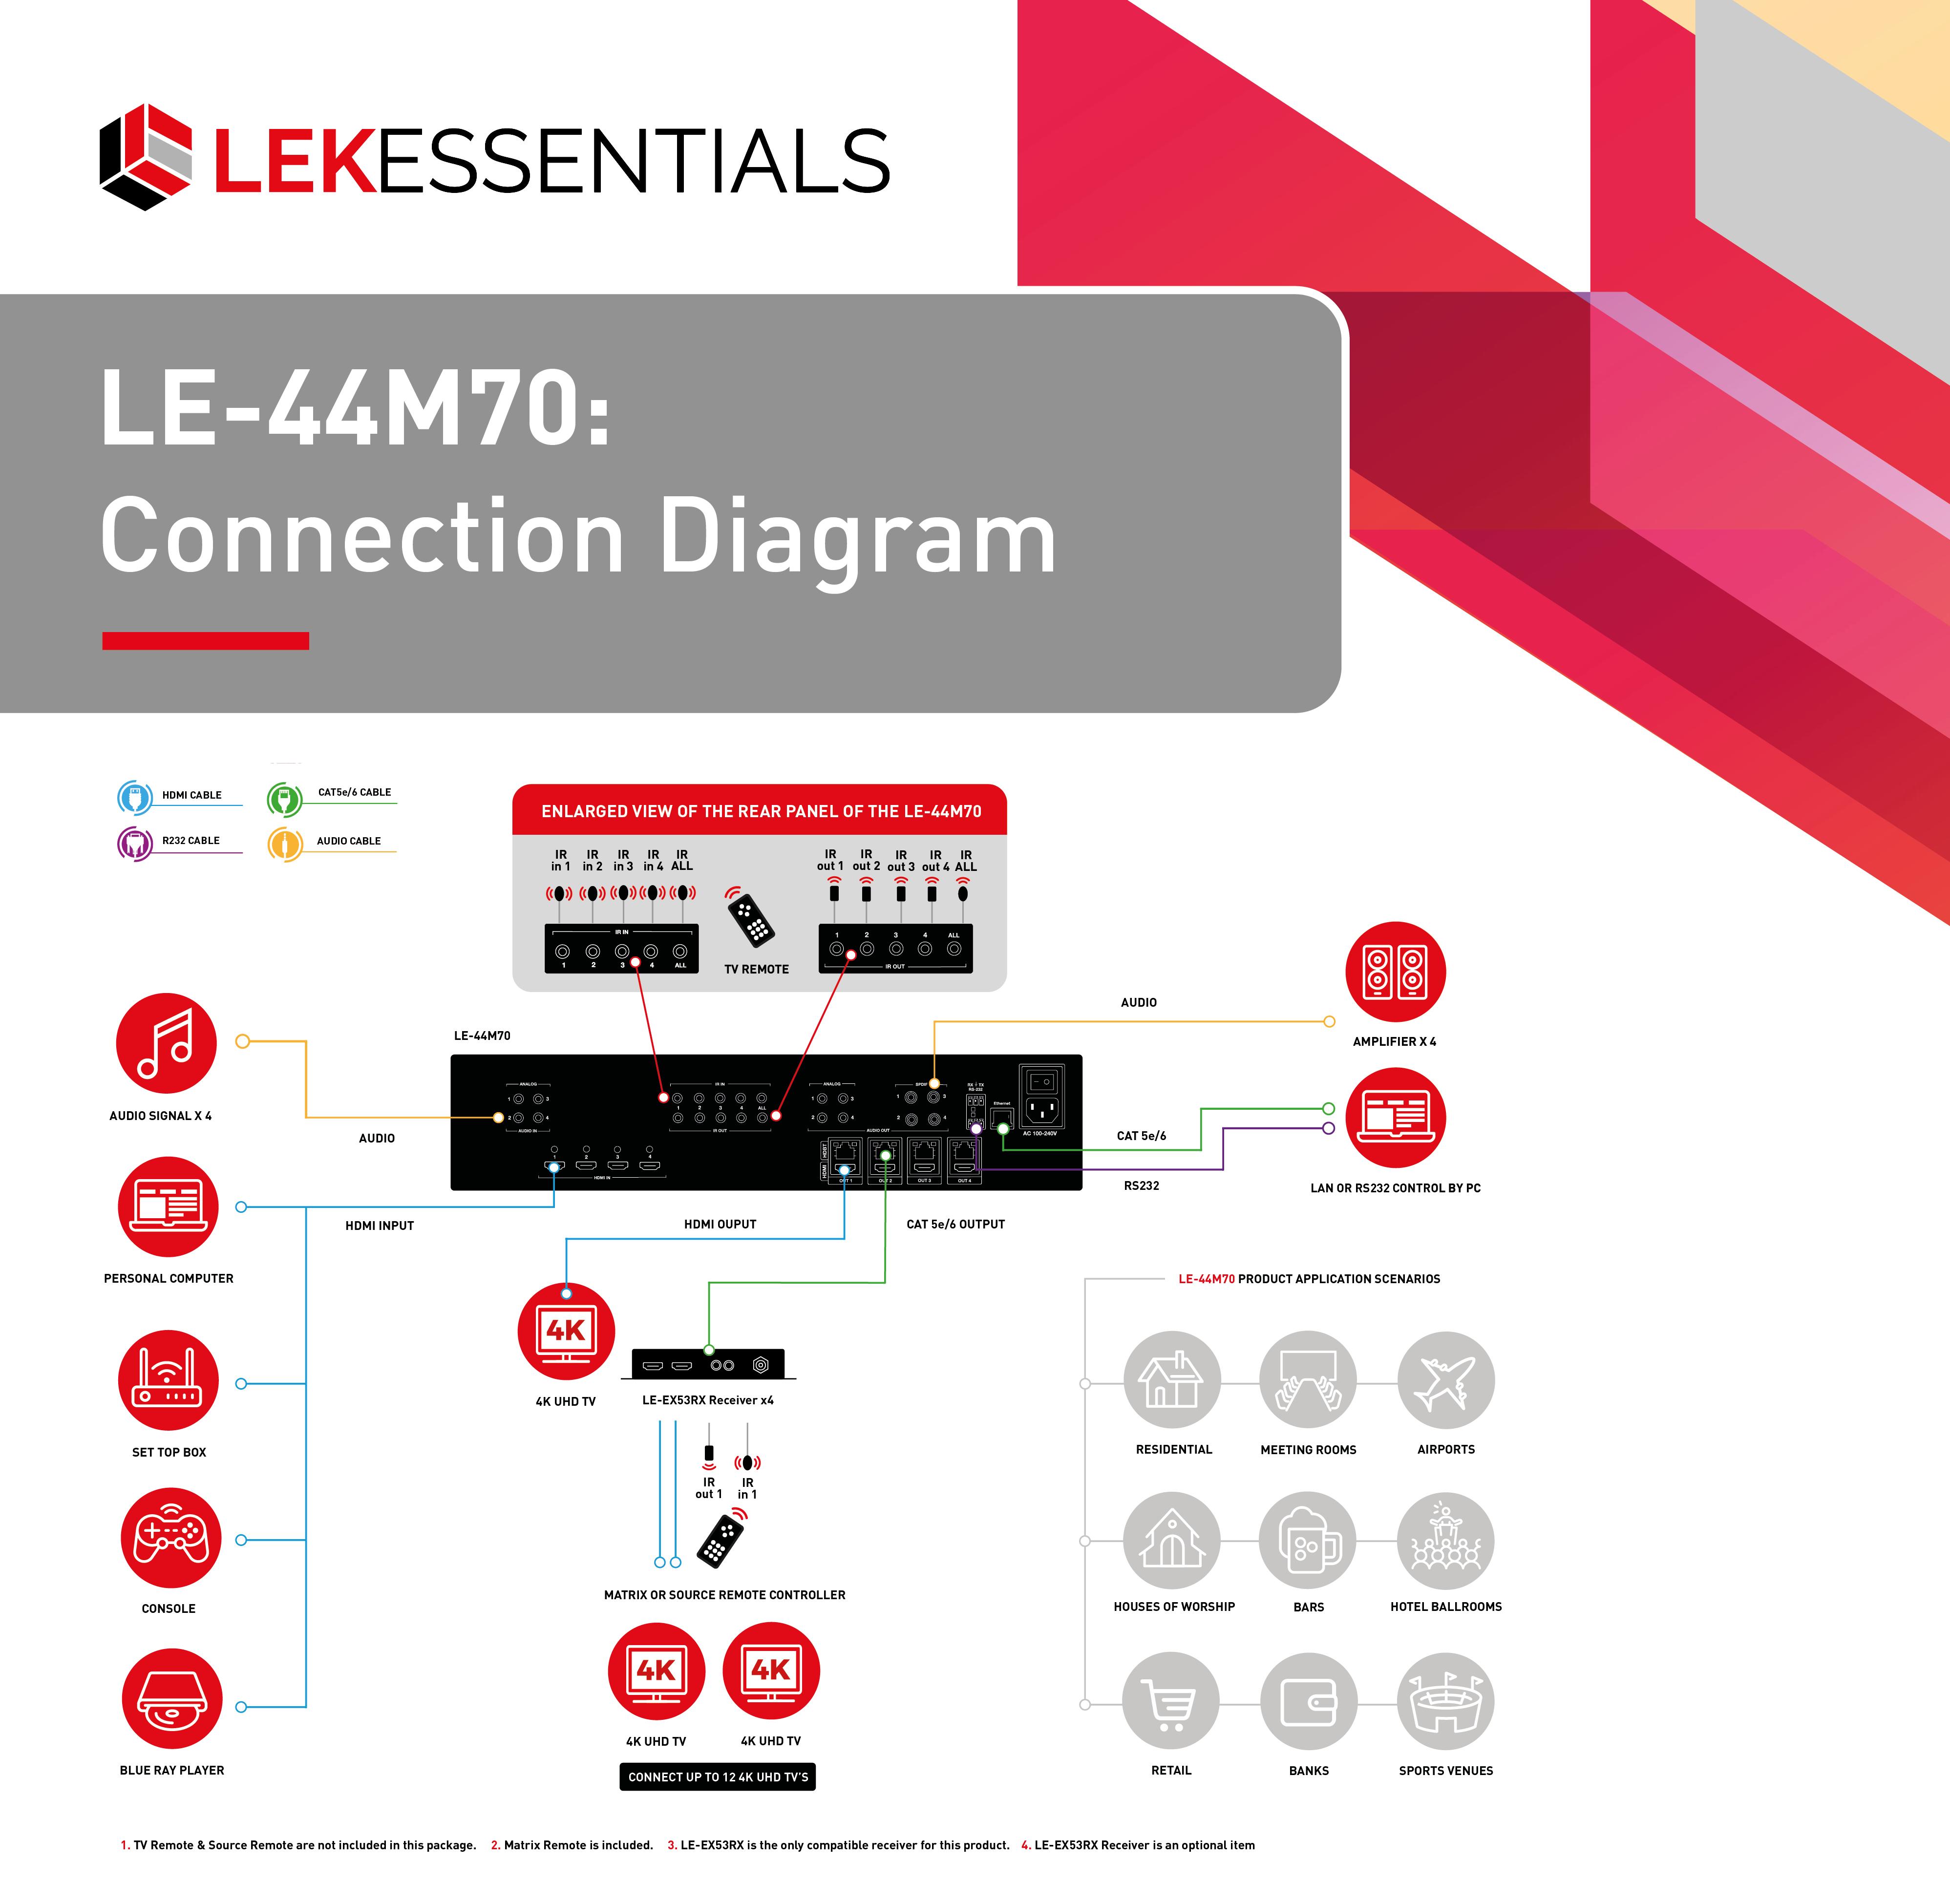 LE-44M70 Connection Diagram